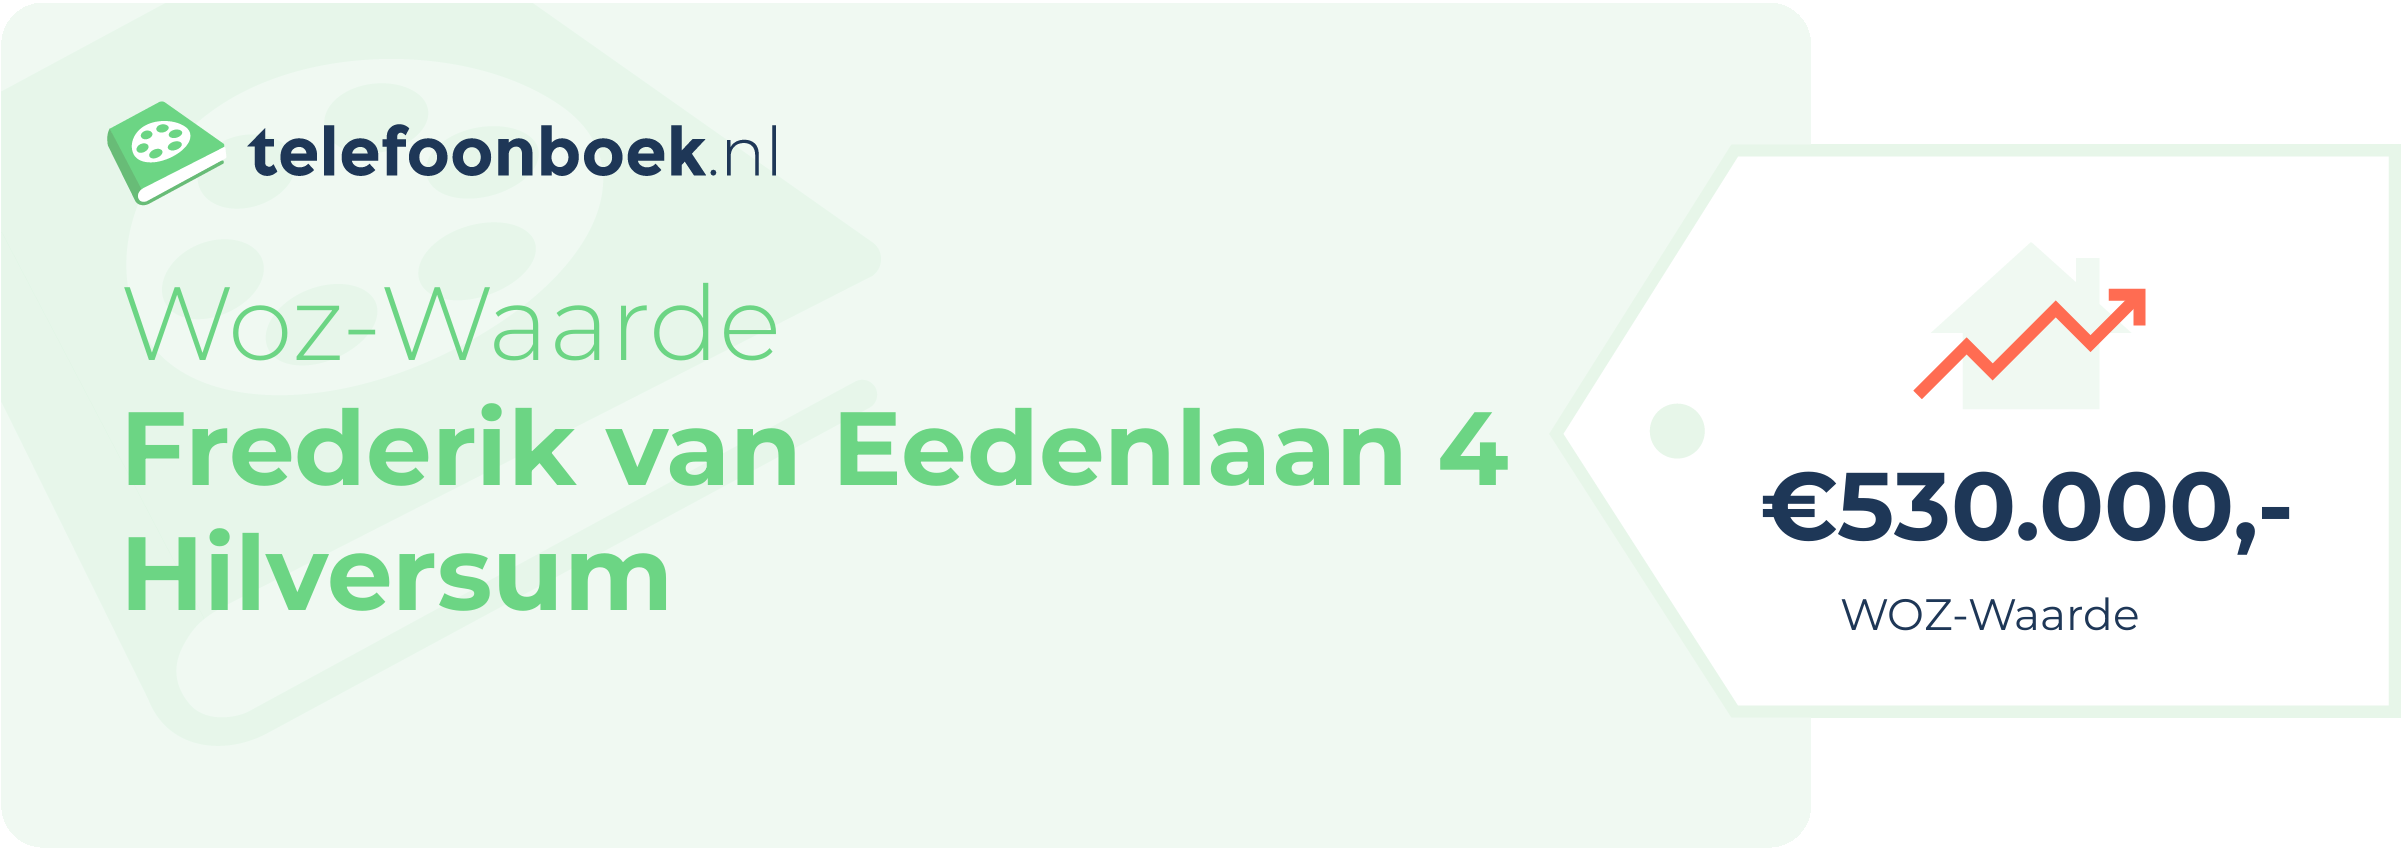 WOZ-waarde Frederik Van Eedenlaan 4 Hilversum